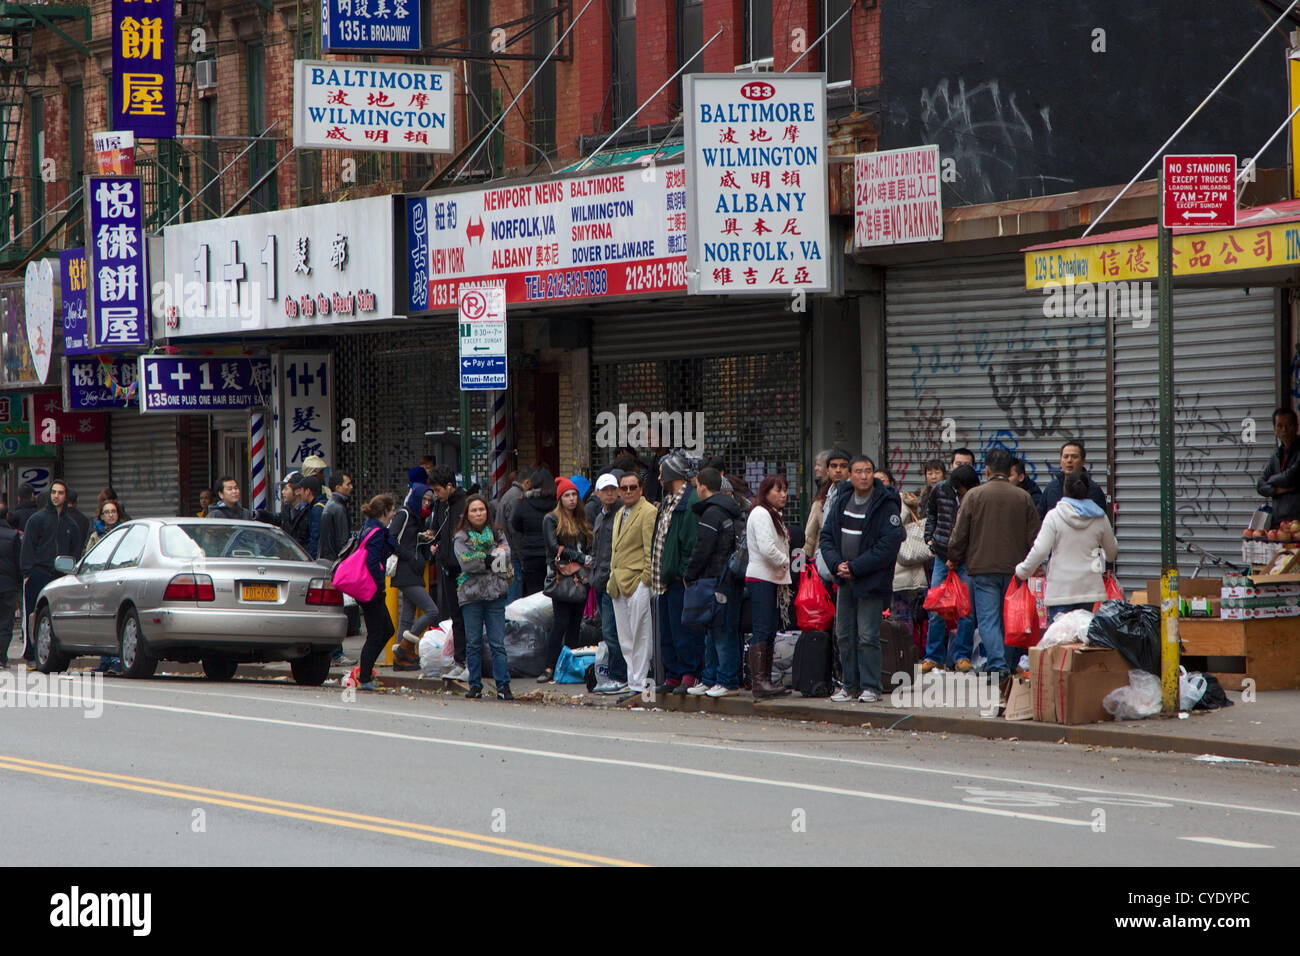 NEW YORK, NY, Stati Uniti d'America - 31 ottobre 2012: persone attendere per 'Chinatown bus' per togliere loro Mahattan dopo la ripresa di servizio seguenti Hurrican Sandy in New York, NY, STATI UNITI D'AMERICA, il 31 ottobre 2012. Foto Stock